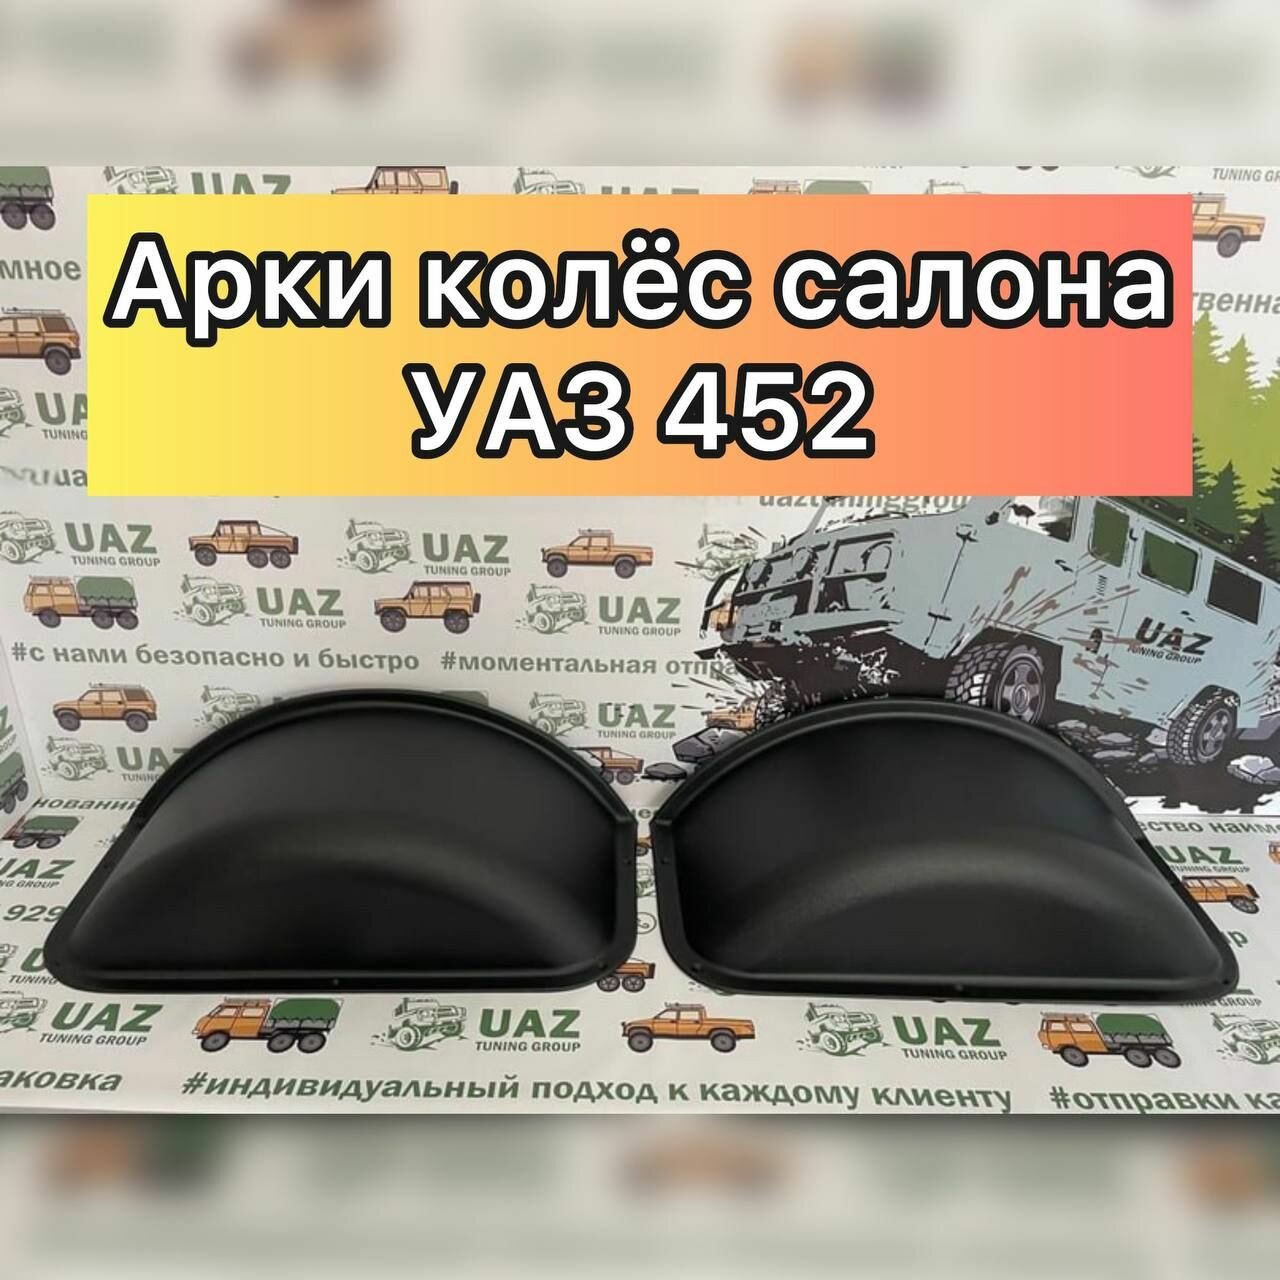 Арки колёс салона (АБС пластик) для УАЗ 452 и модификации.